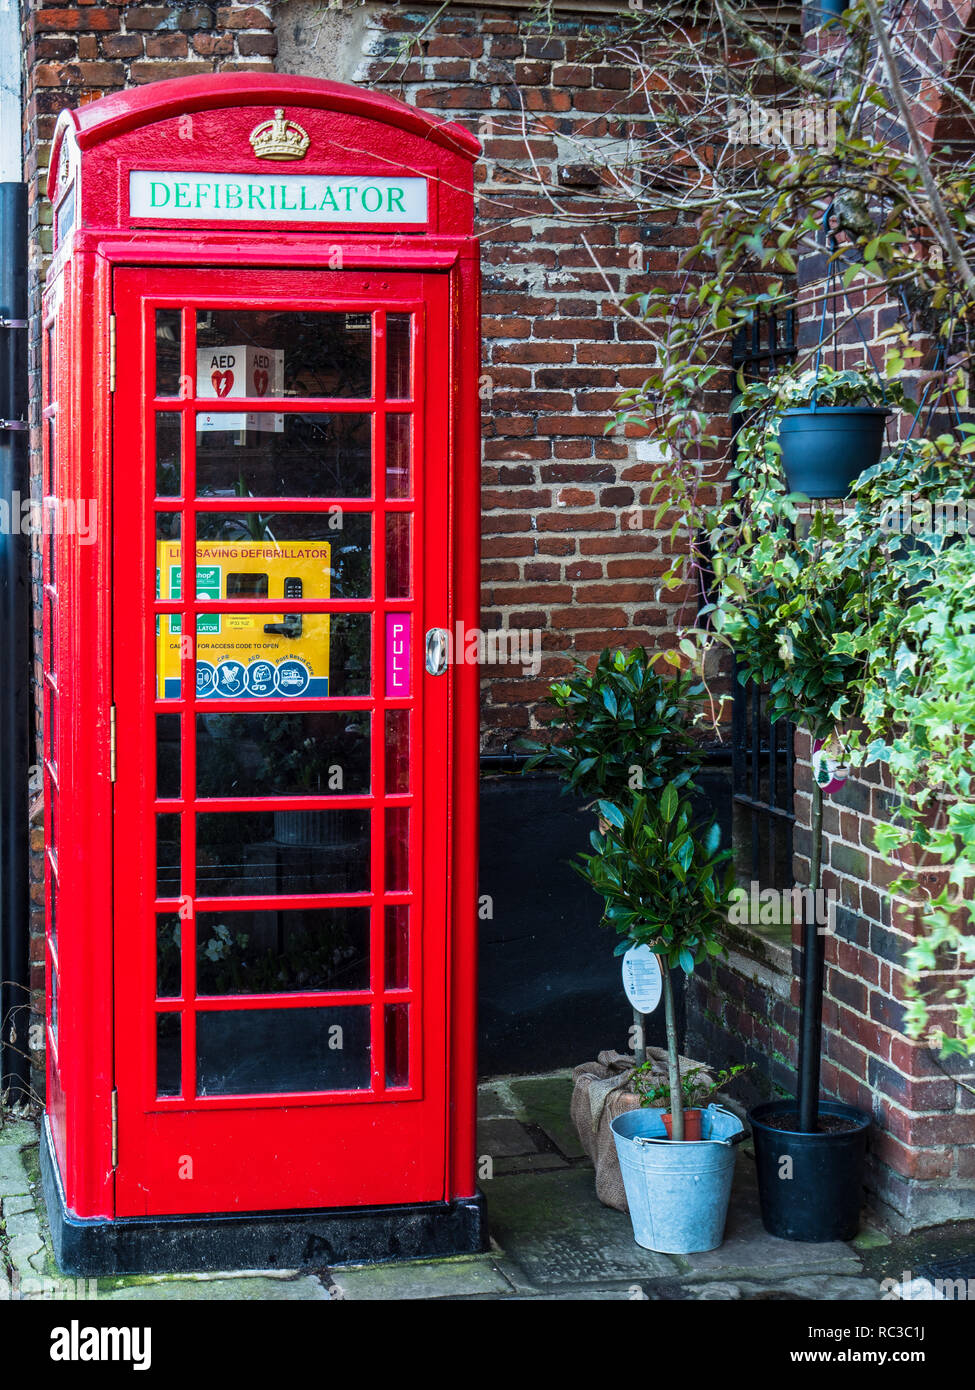 Telefon-Box-Defibrillator - viele britische rote Telefon-Boxen wurden in Defibrillator-Standorte umgewandelt. Wiederverwendbarkeit des roten Telefonkastens. Stockfoto